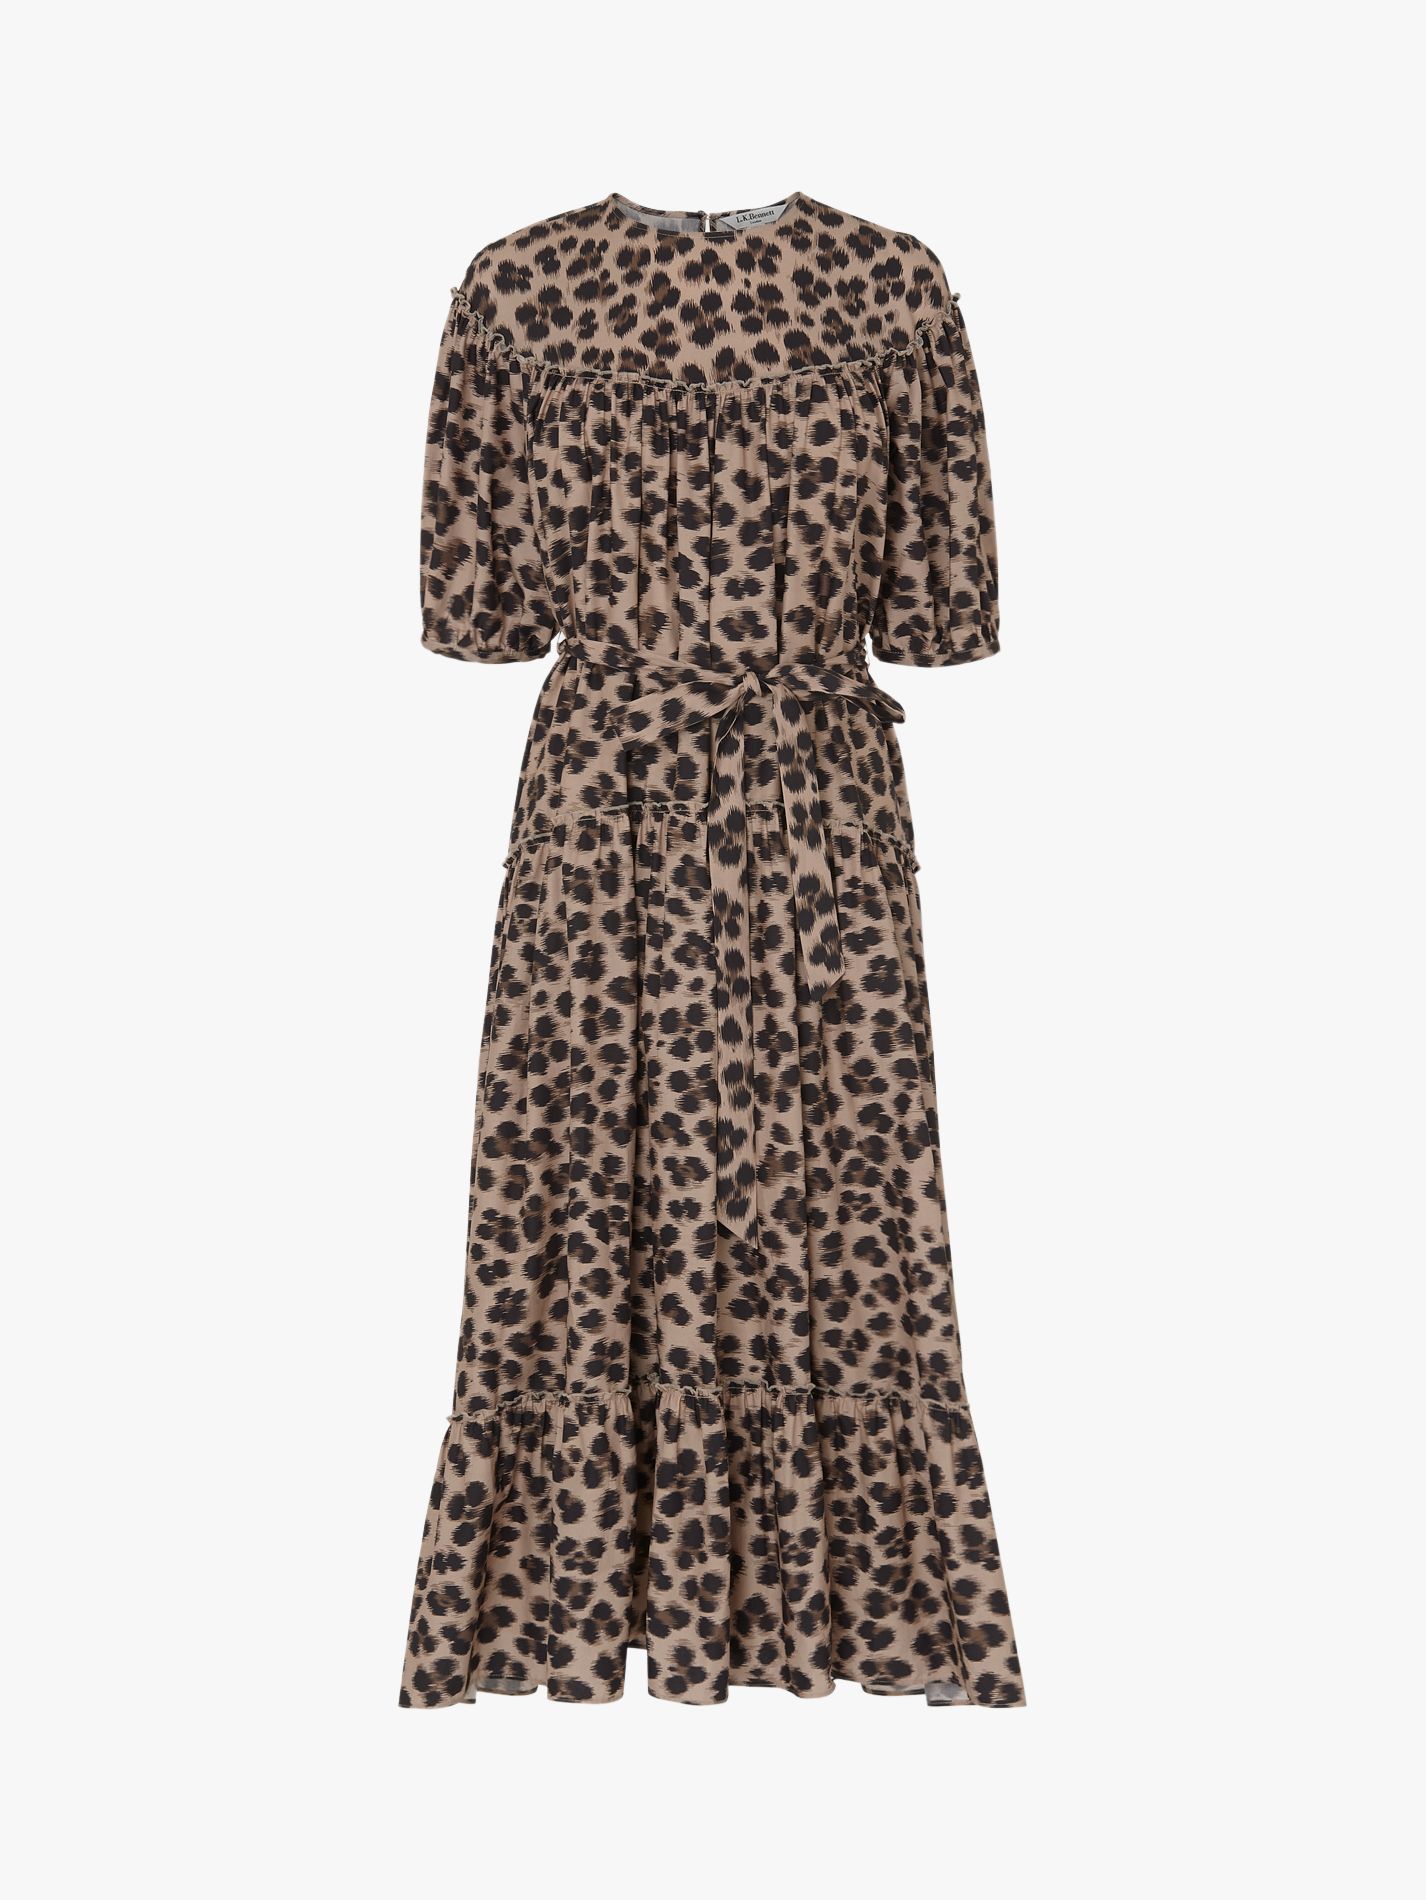 lk bennett leopard print dress